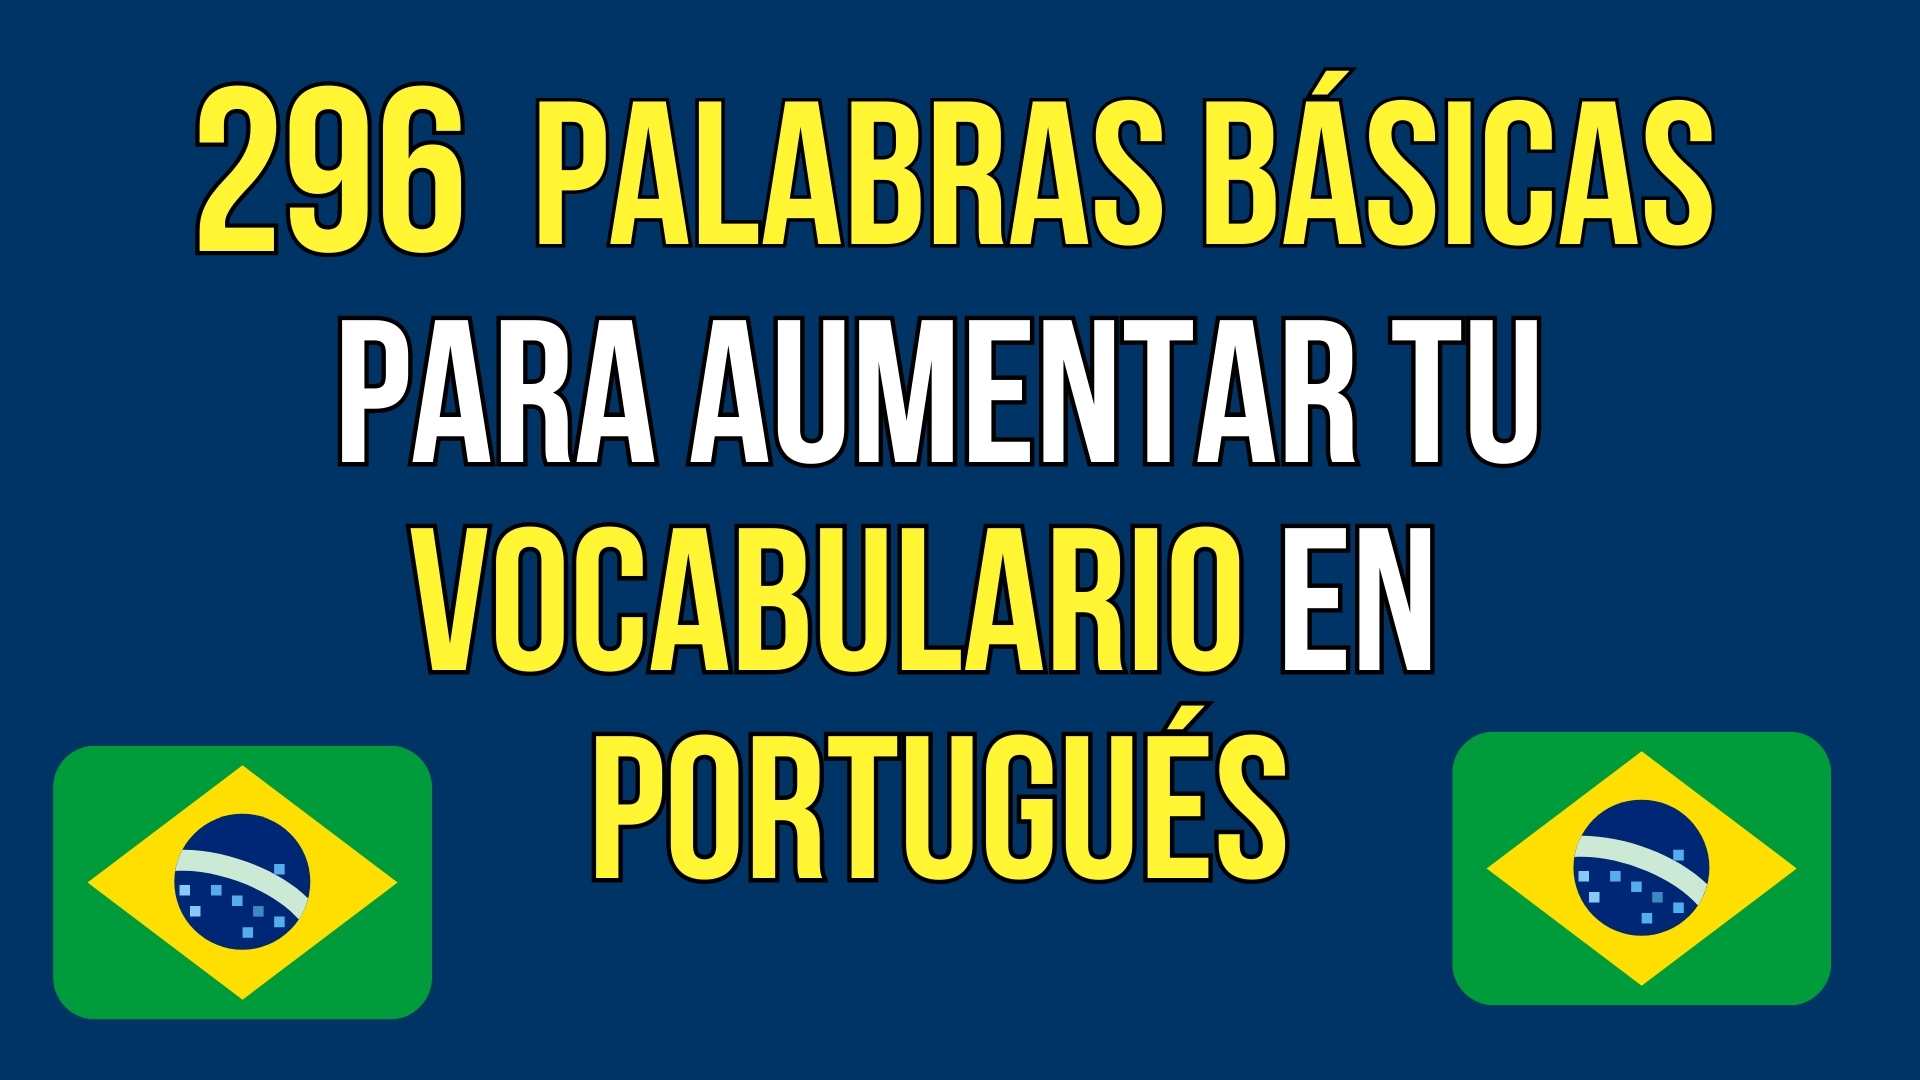 296 Palabras BÁsicas En PortuguÉs Para Aumentar Tu Vocabulario